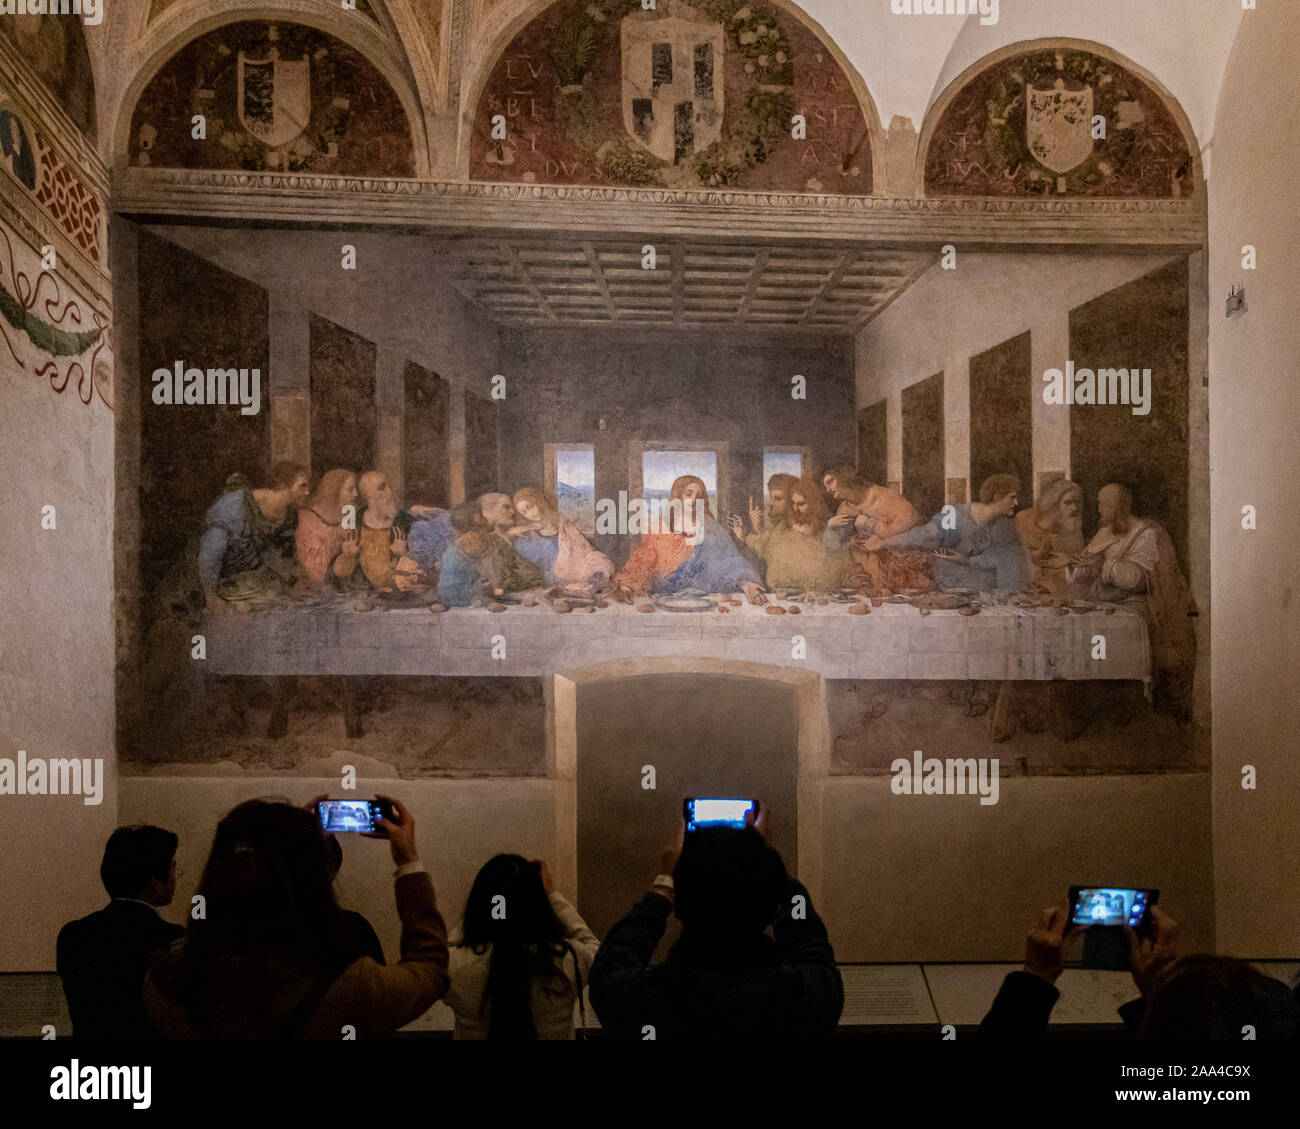 Mailand, Italien - Nov 6, 2019: Smartphone süchtig Touristen fotografieren während des Letzten Abendmahls Wandmalerei Besuch von Leonardo da Vinci in der refec Stockfoto